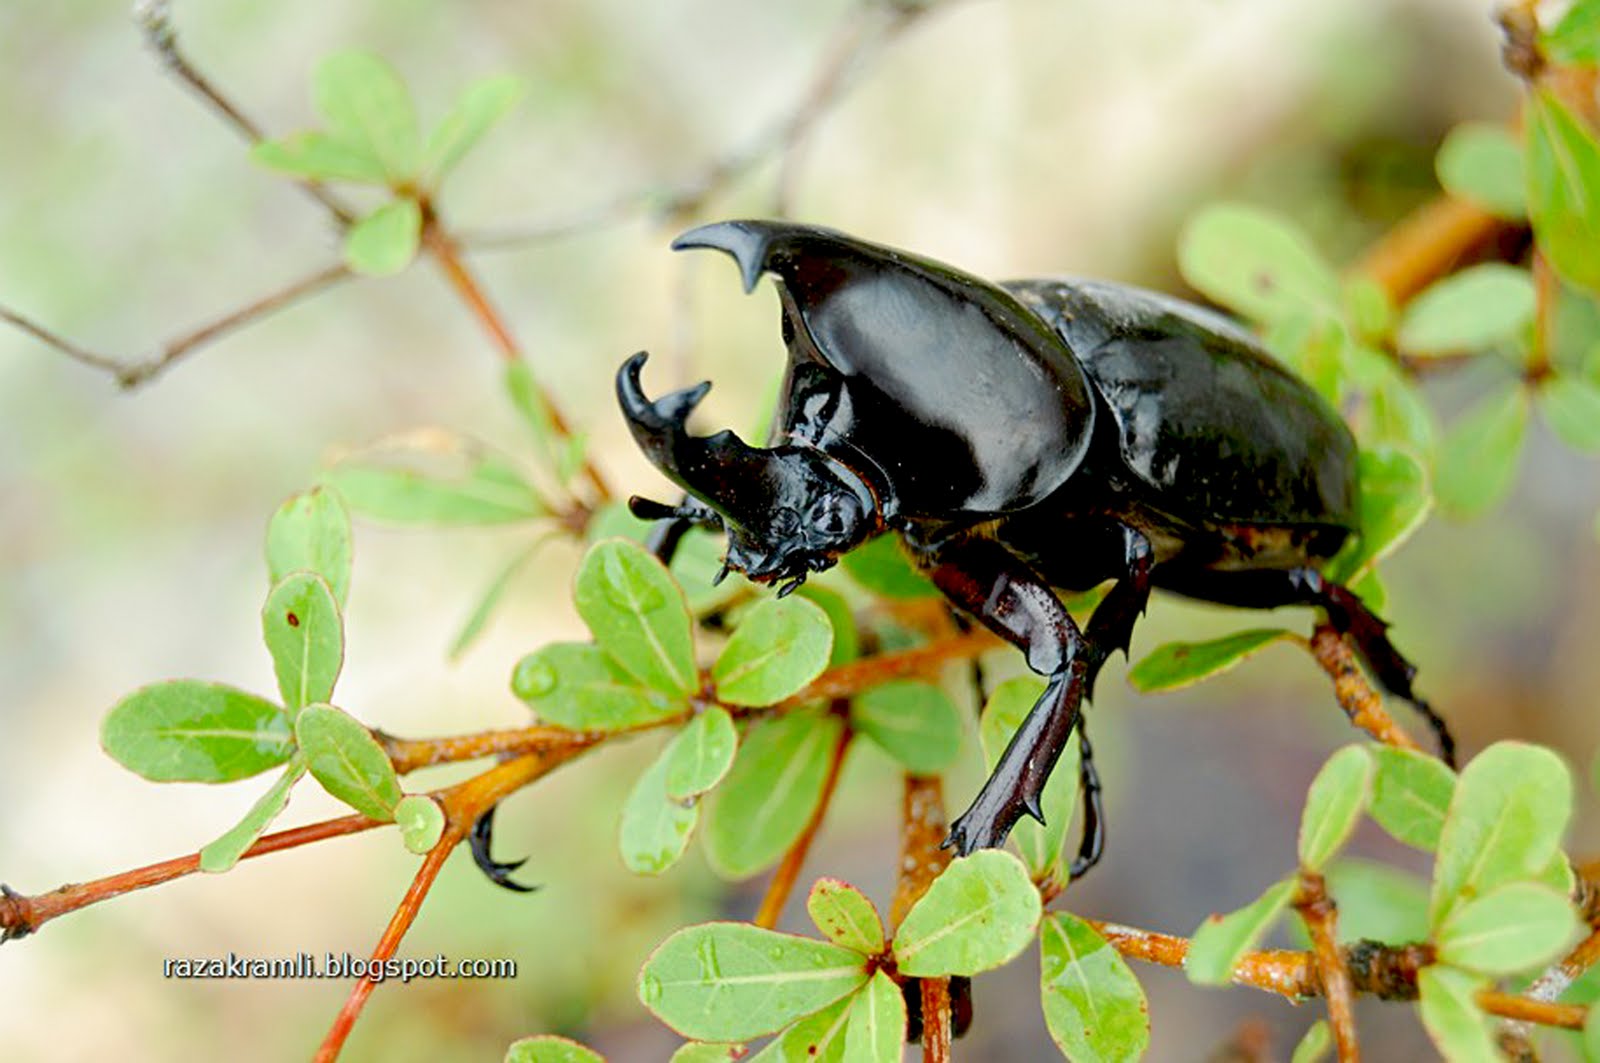 Fotografi merakam sejarah Kumbang Tanduk  